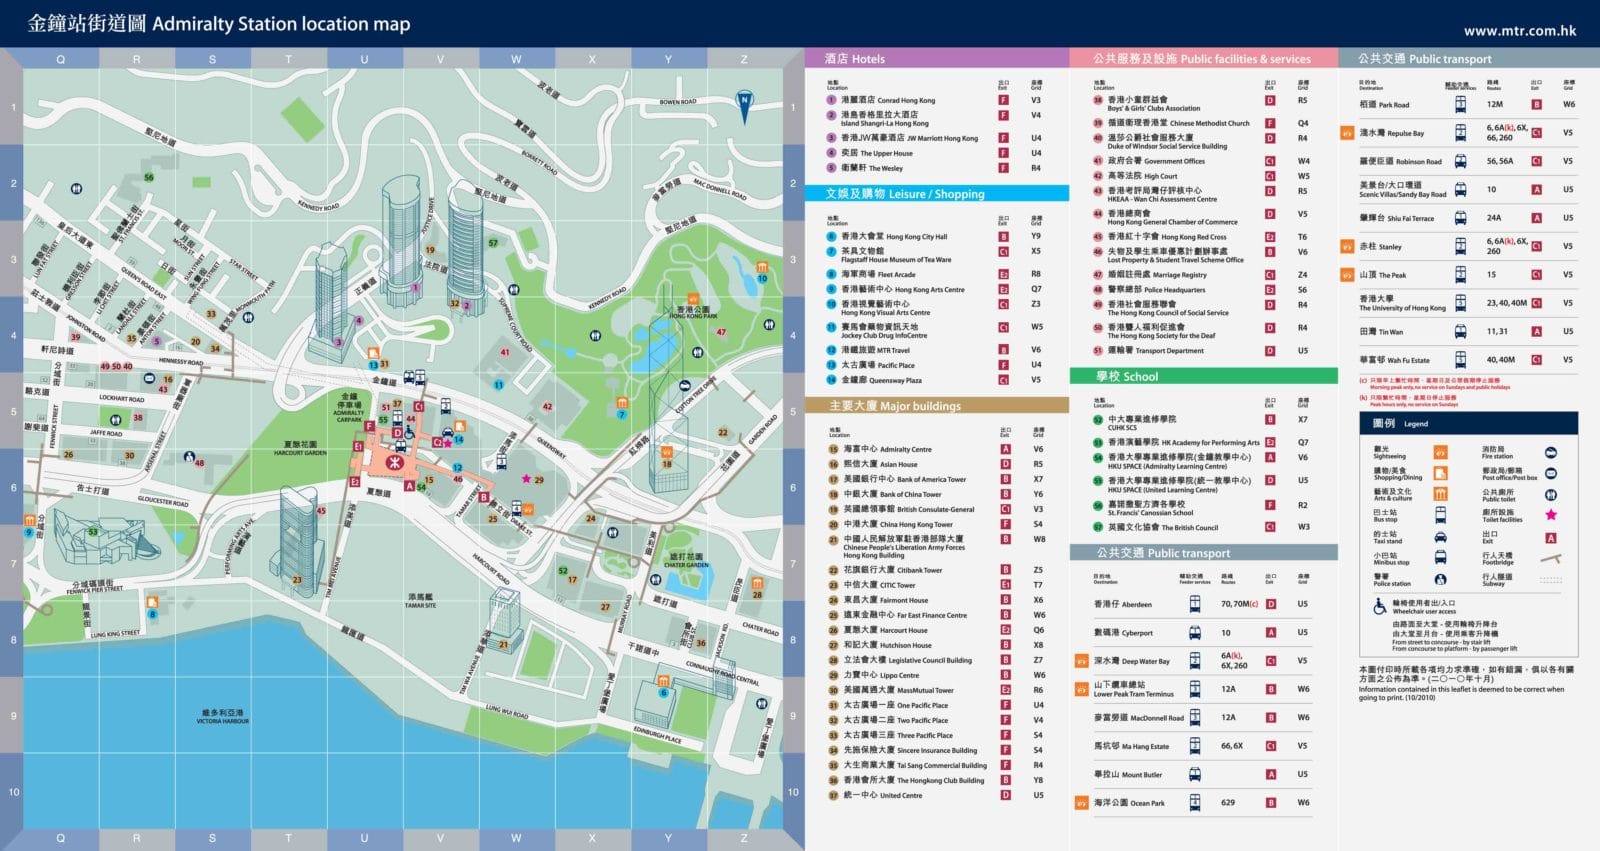 香港:中环地铁站区域图2012-2013